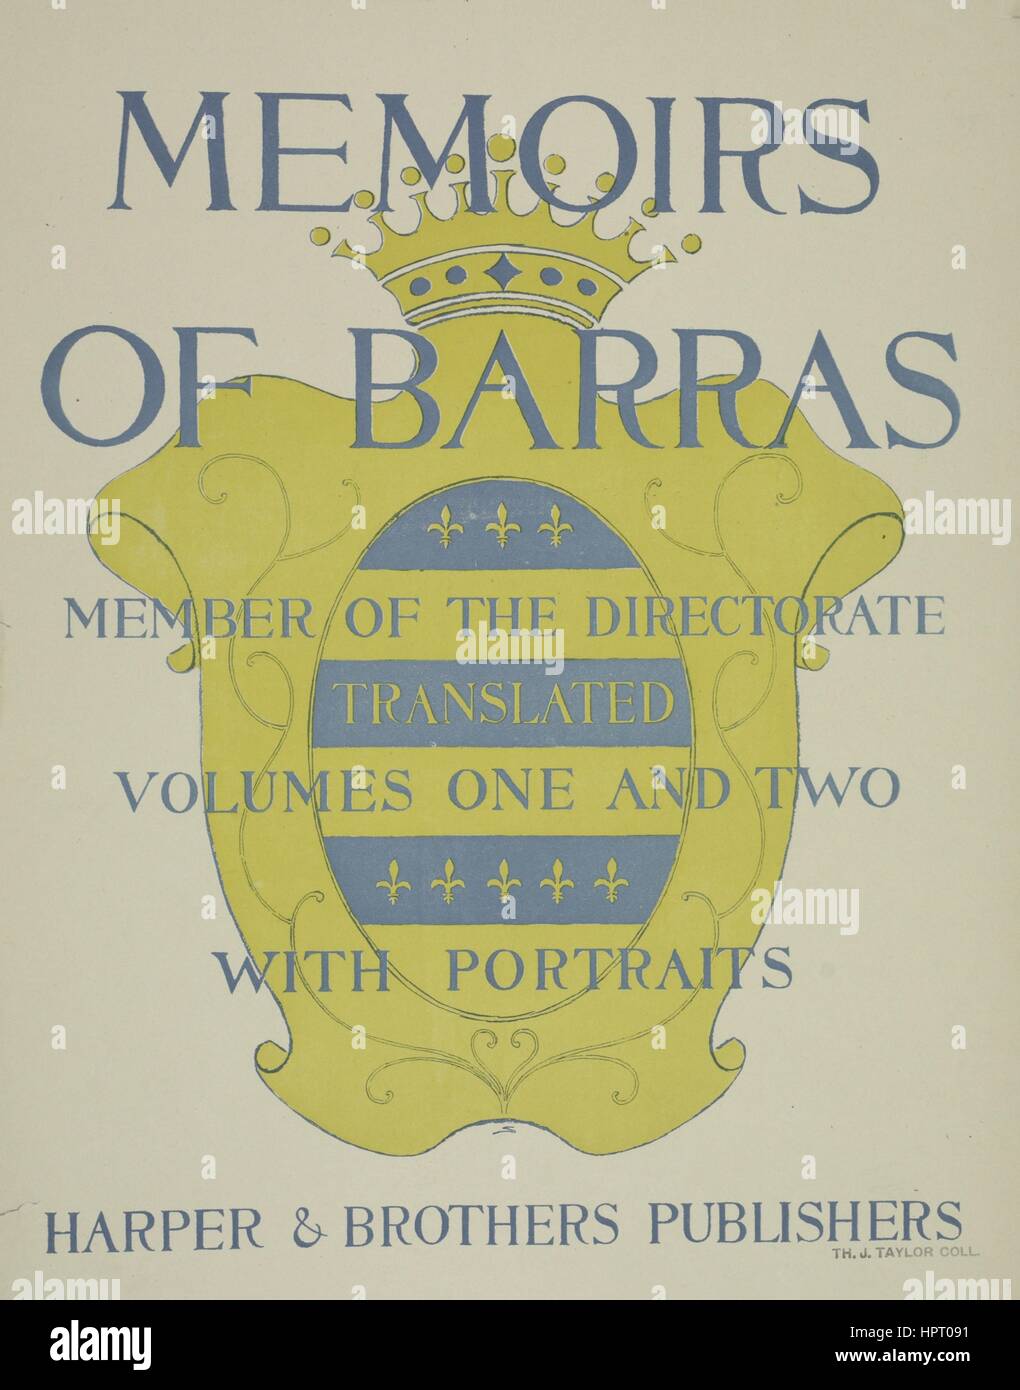 Poster publicité pour un livre intitulé Mémoires de Barras, membre de la Direction des volumes traduit un et deux avec des portraits, 1903. À partir de la Bibliothèque publique de New York. Banque D'Images